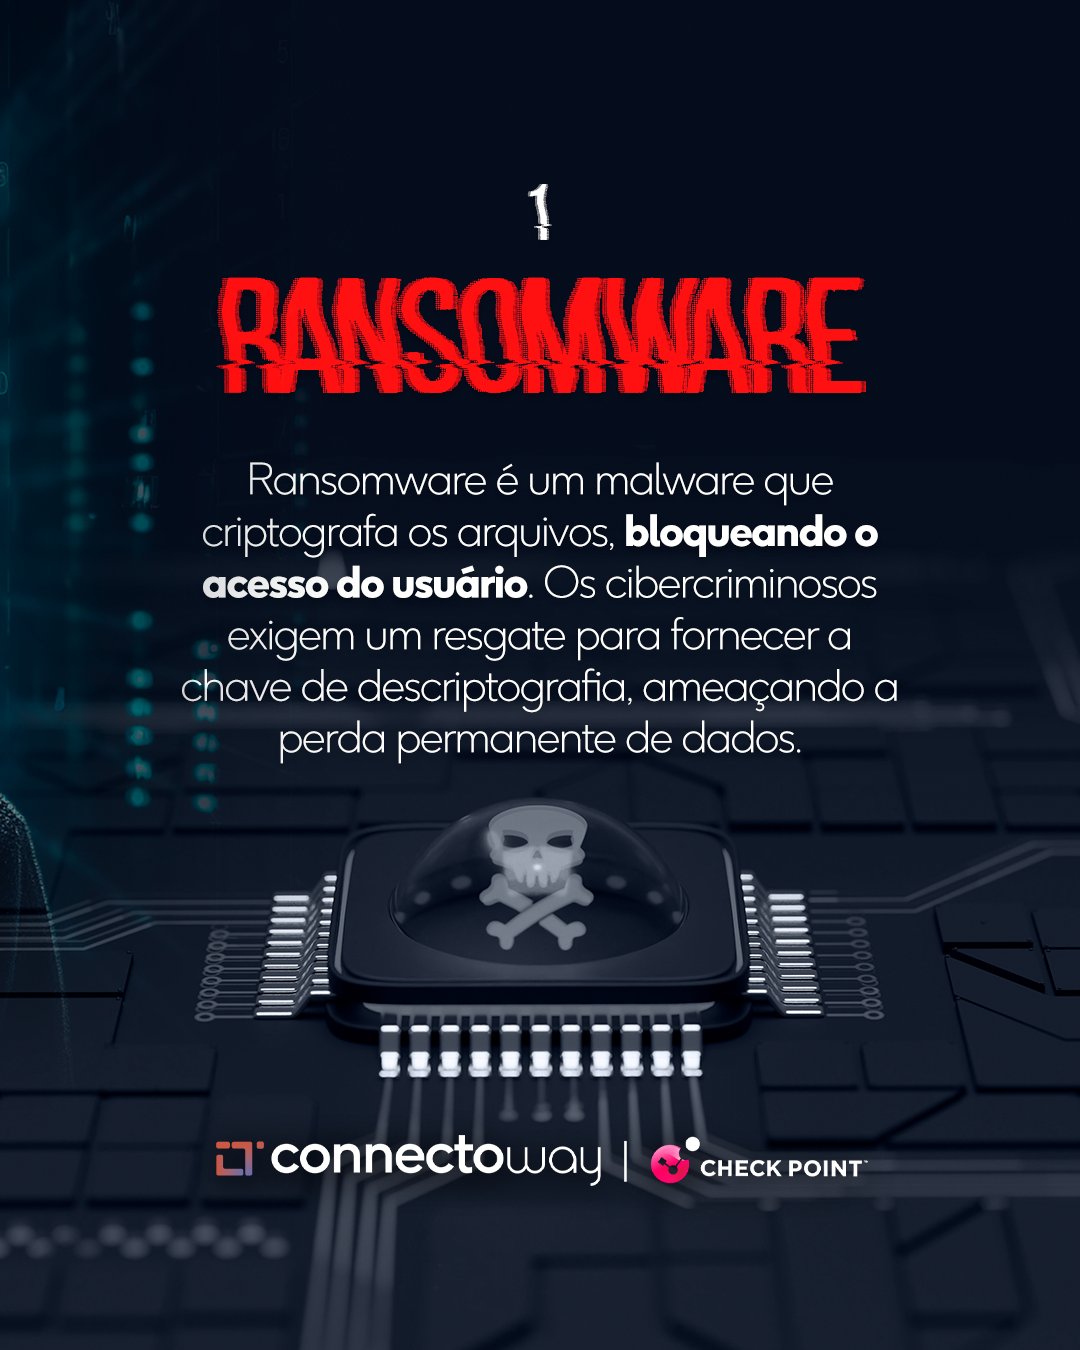 ciberseguranca em festas - ransomware